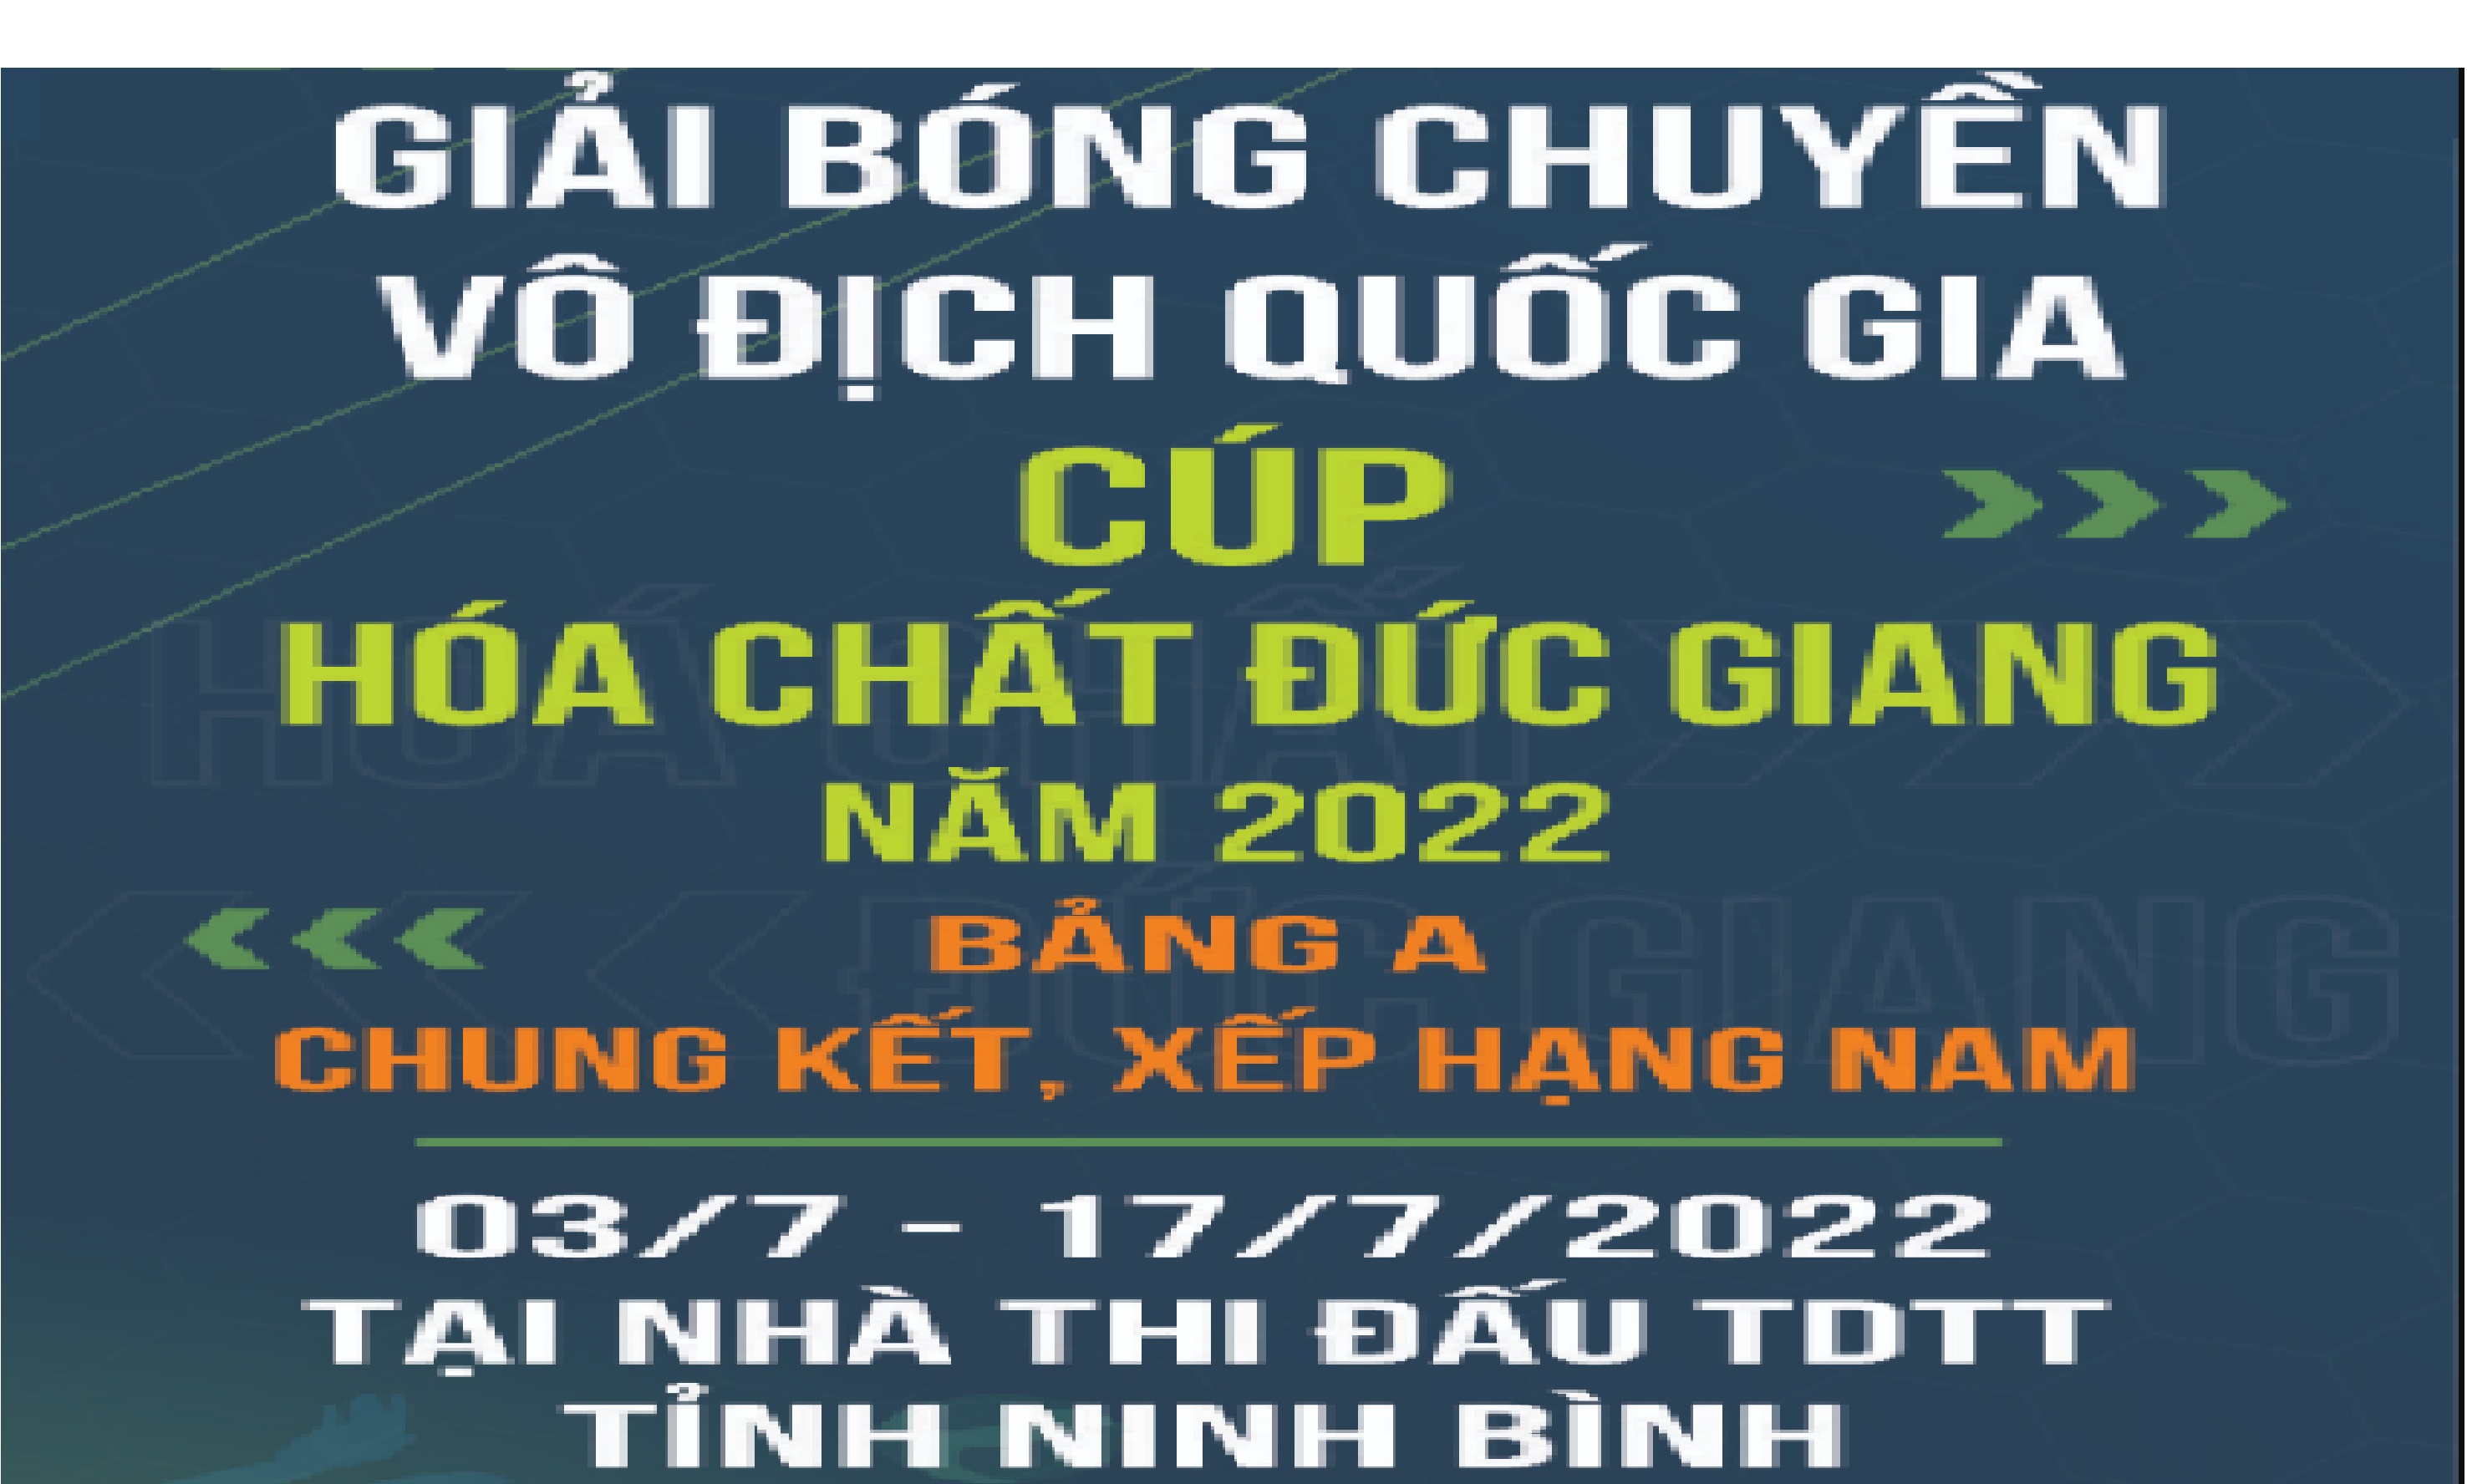 Giải Bóng chuyền Vô địch quốc gia Cúp Hóa chất Đức Giang năm 2022 tại Ninh Bình